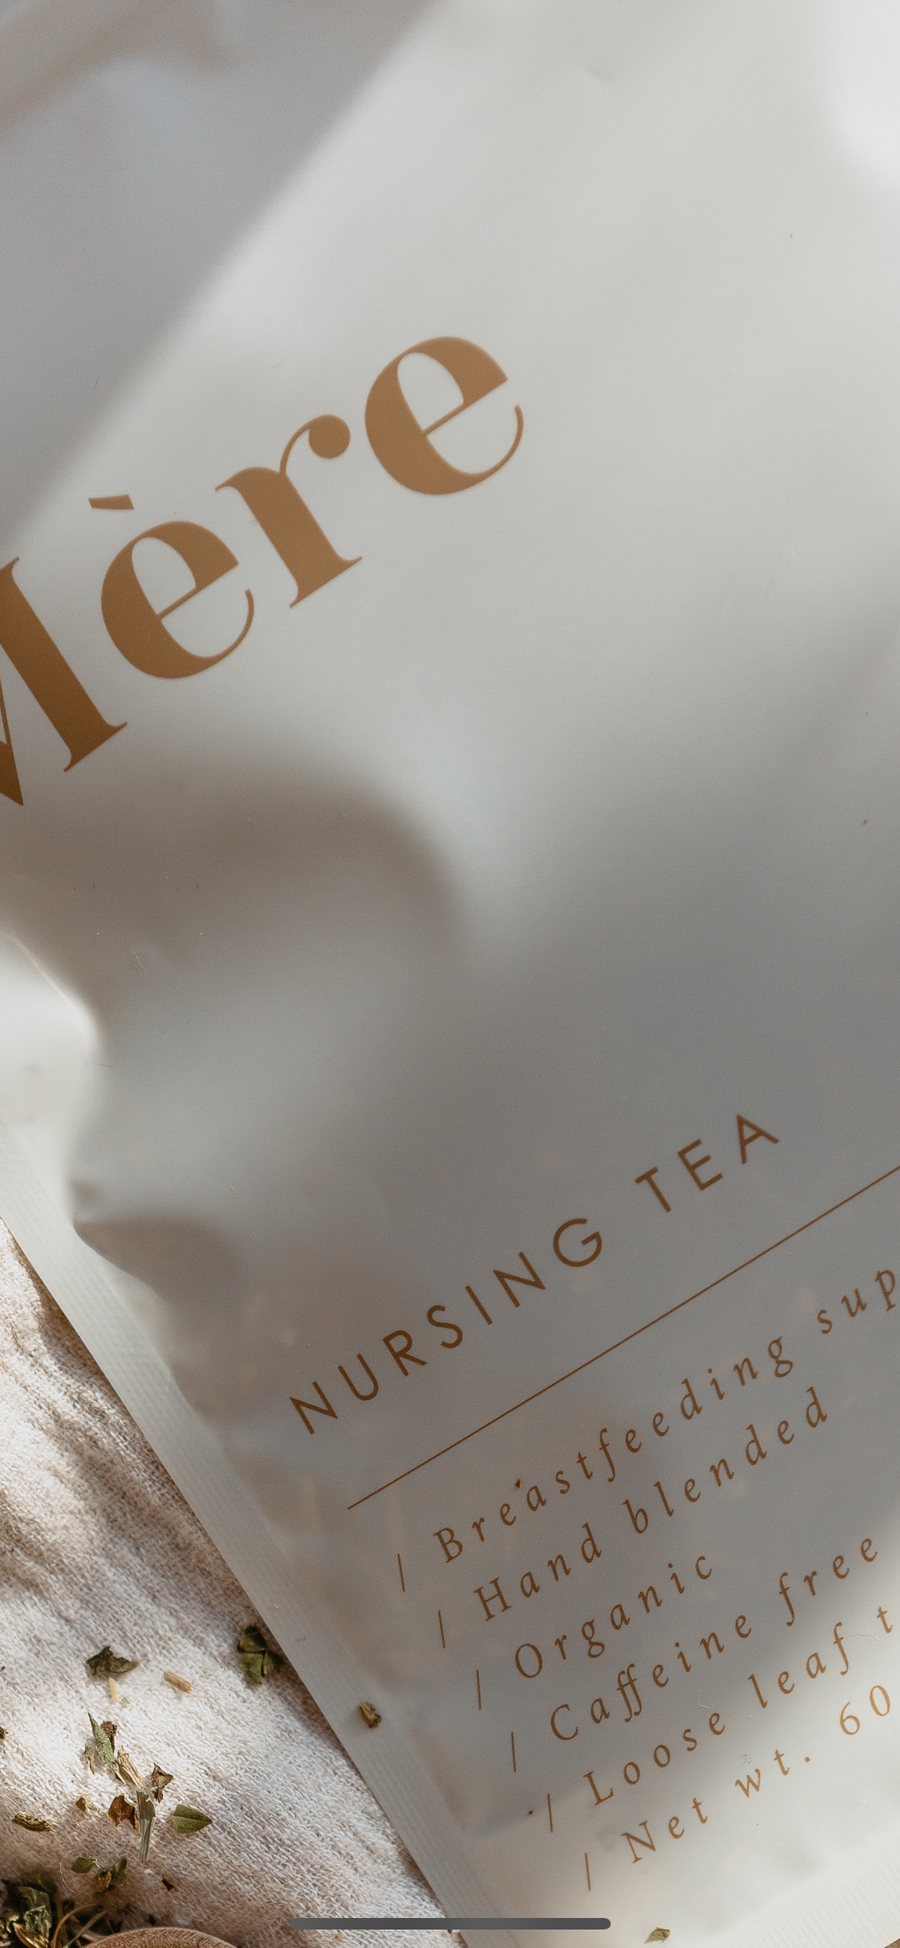 Mère Nursing Tea